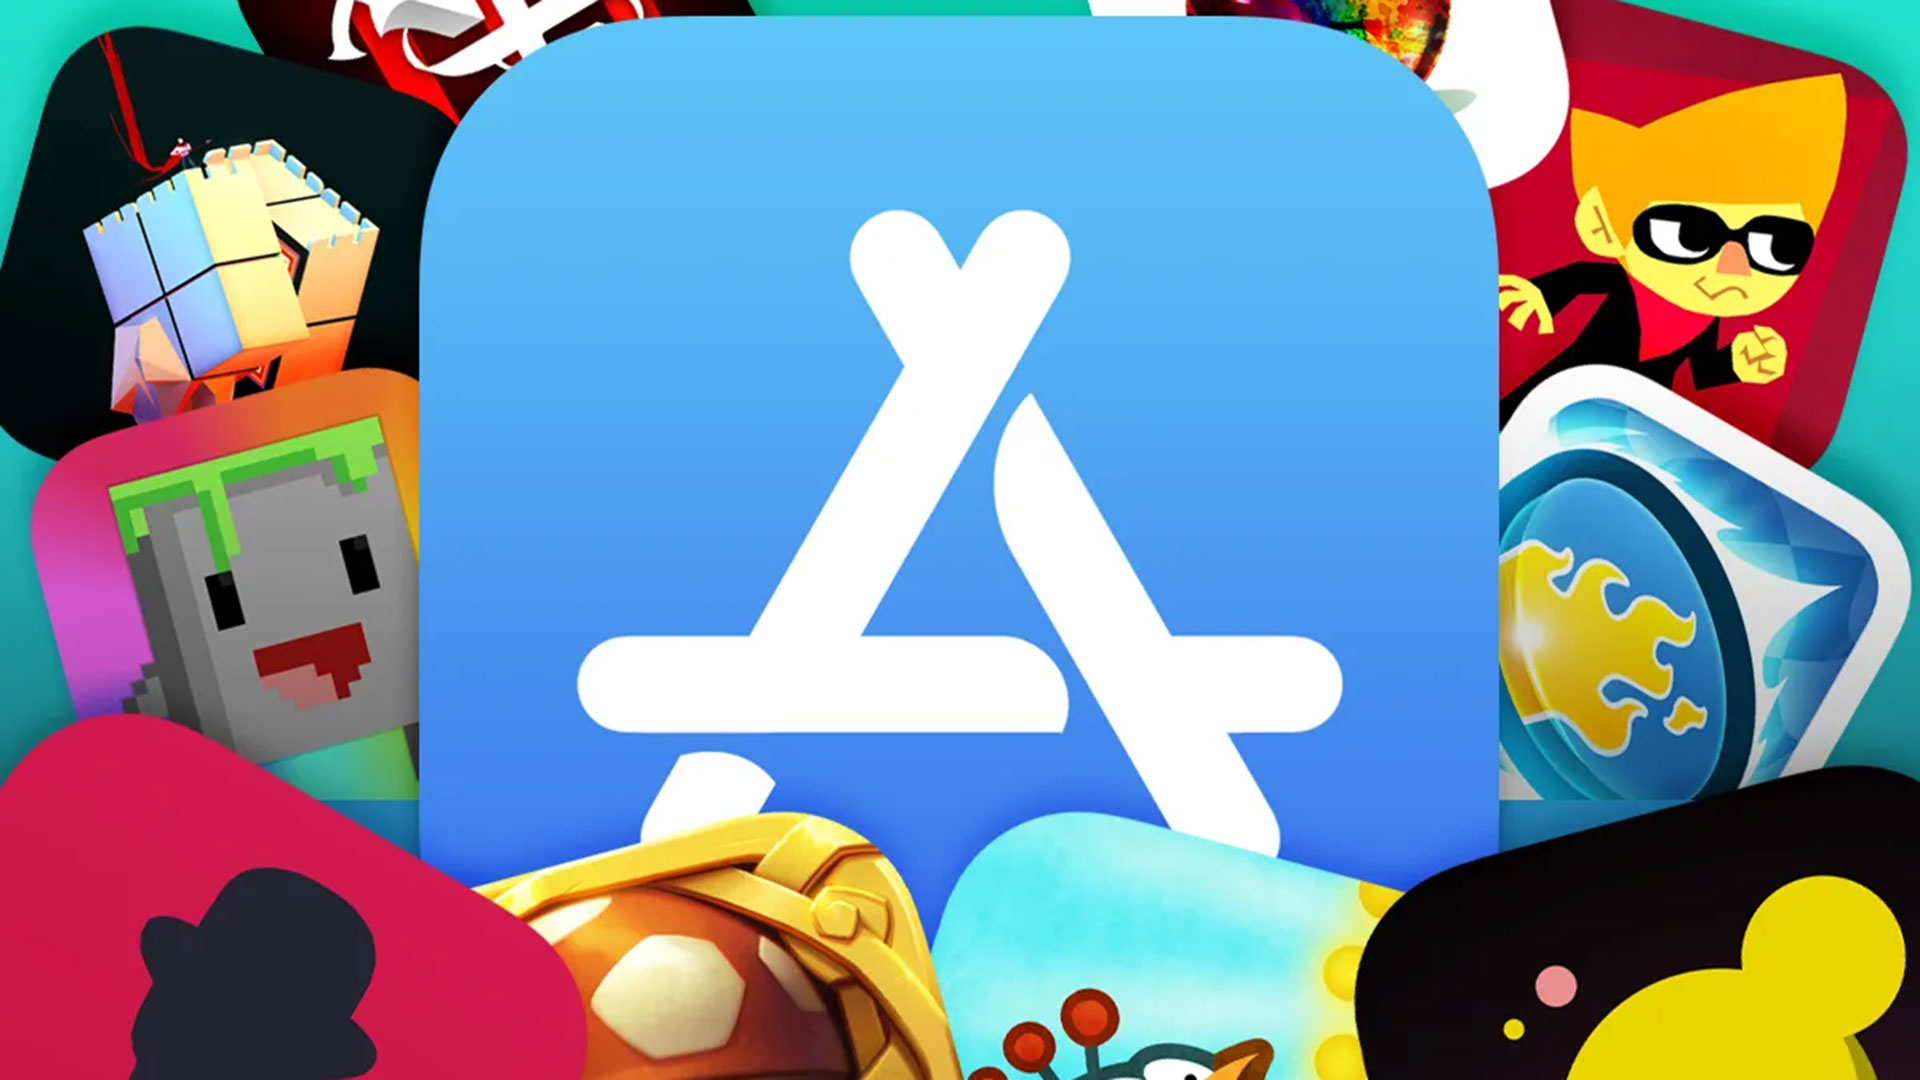 App igra. App Store. Игровые приложения. APPSTORE приложения. App Store игры.